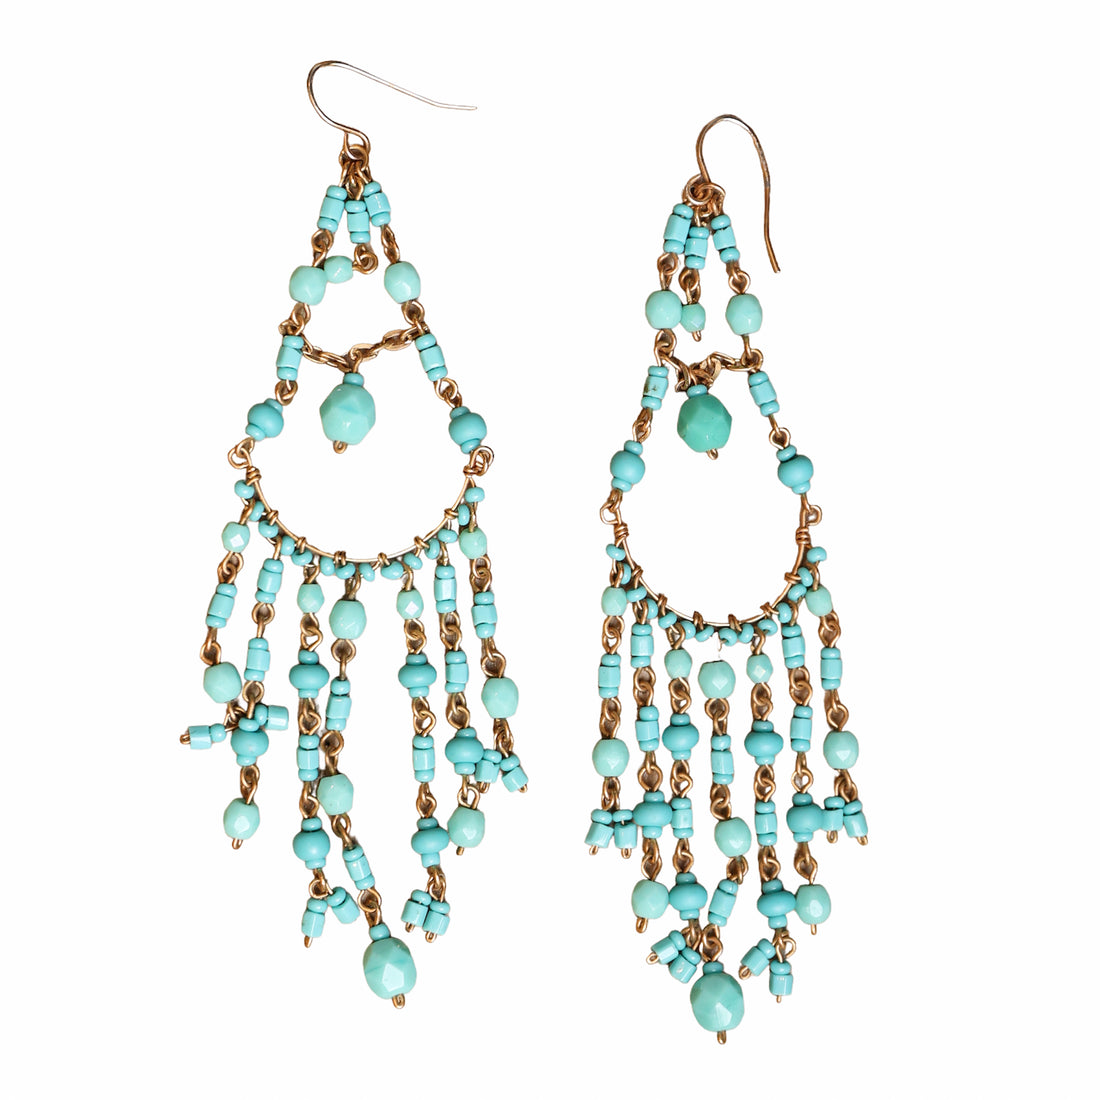 Turquoise chandelier earrings